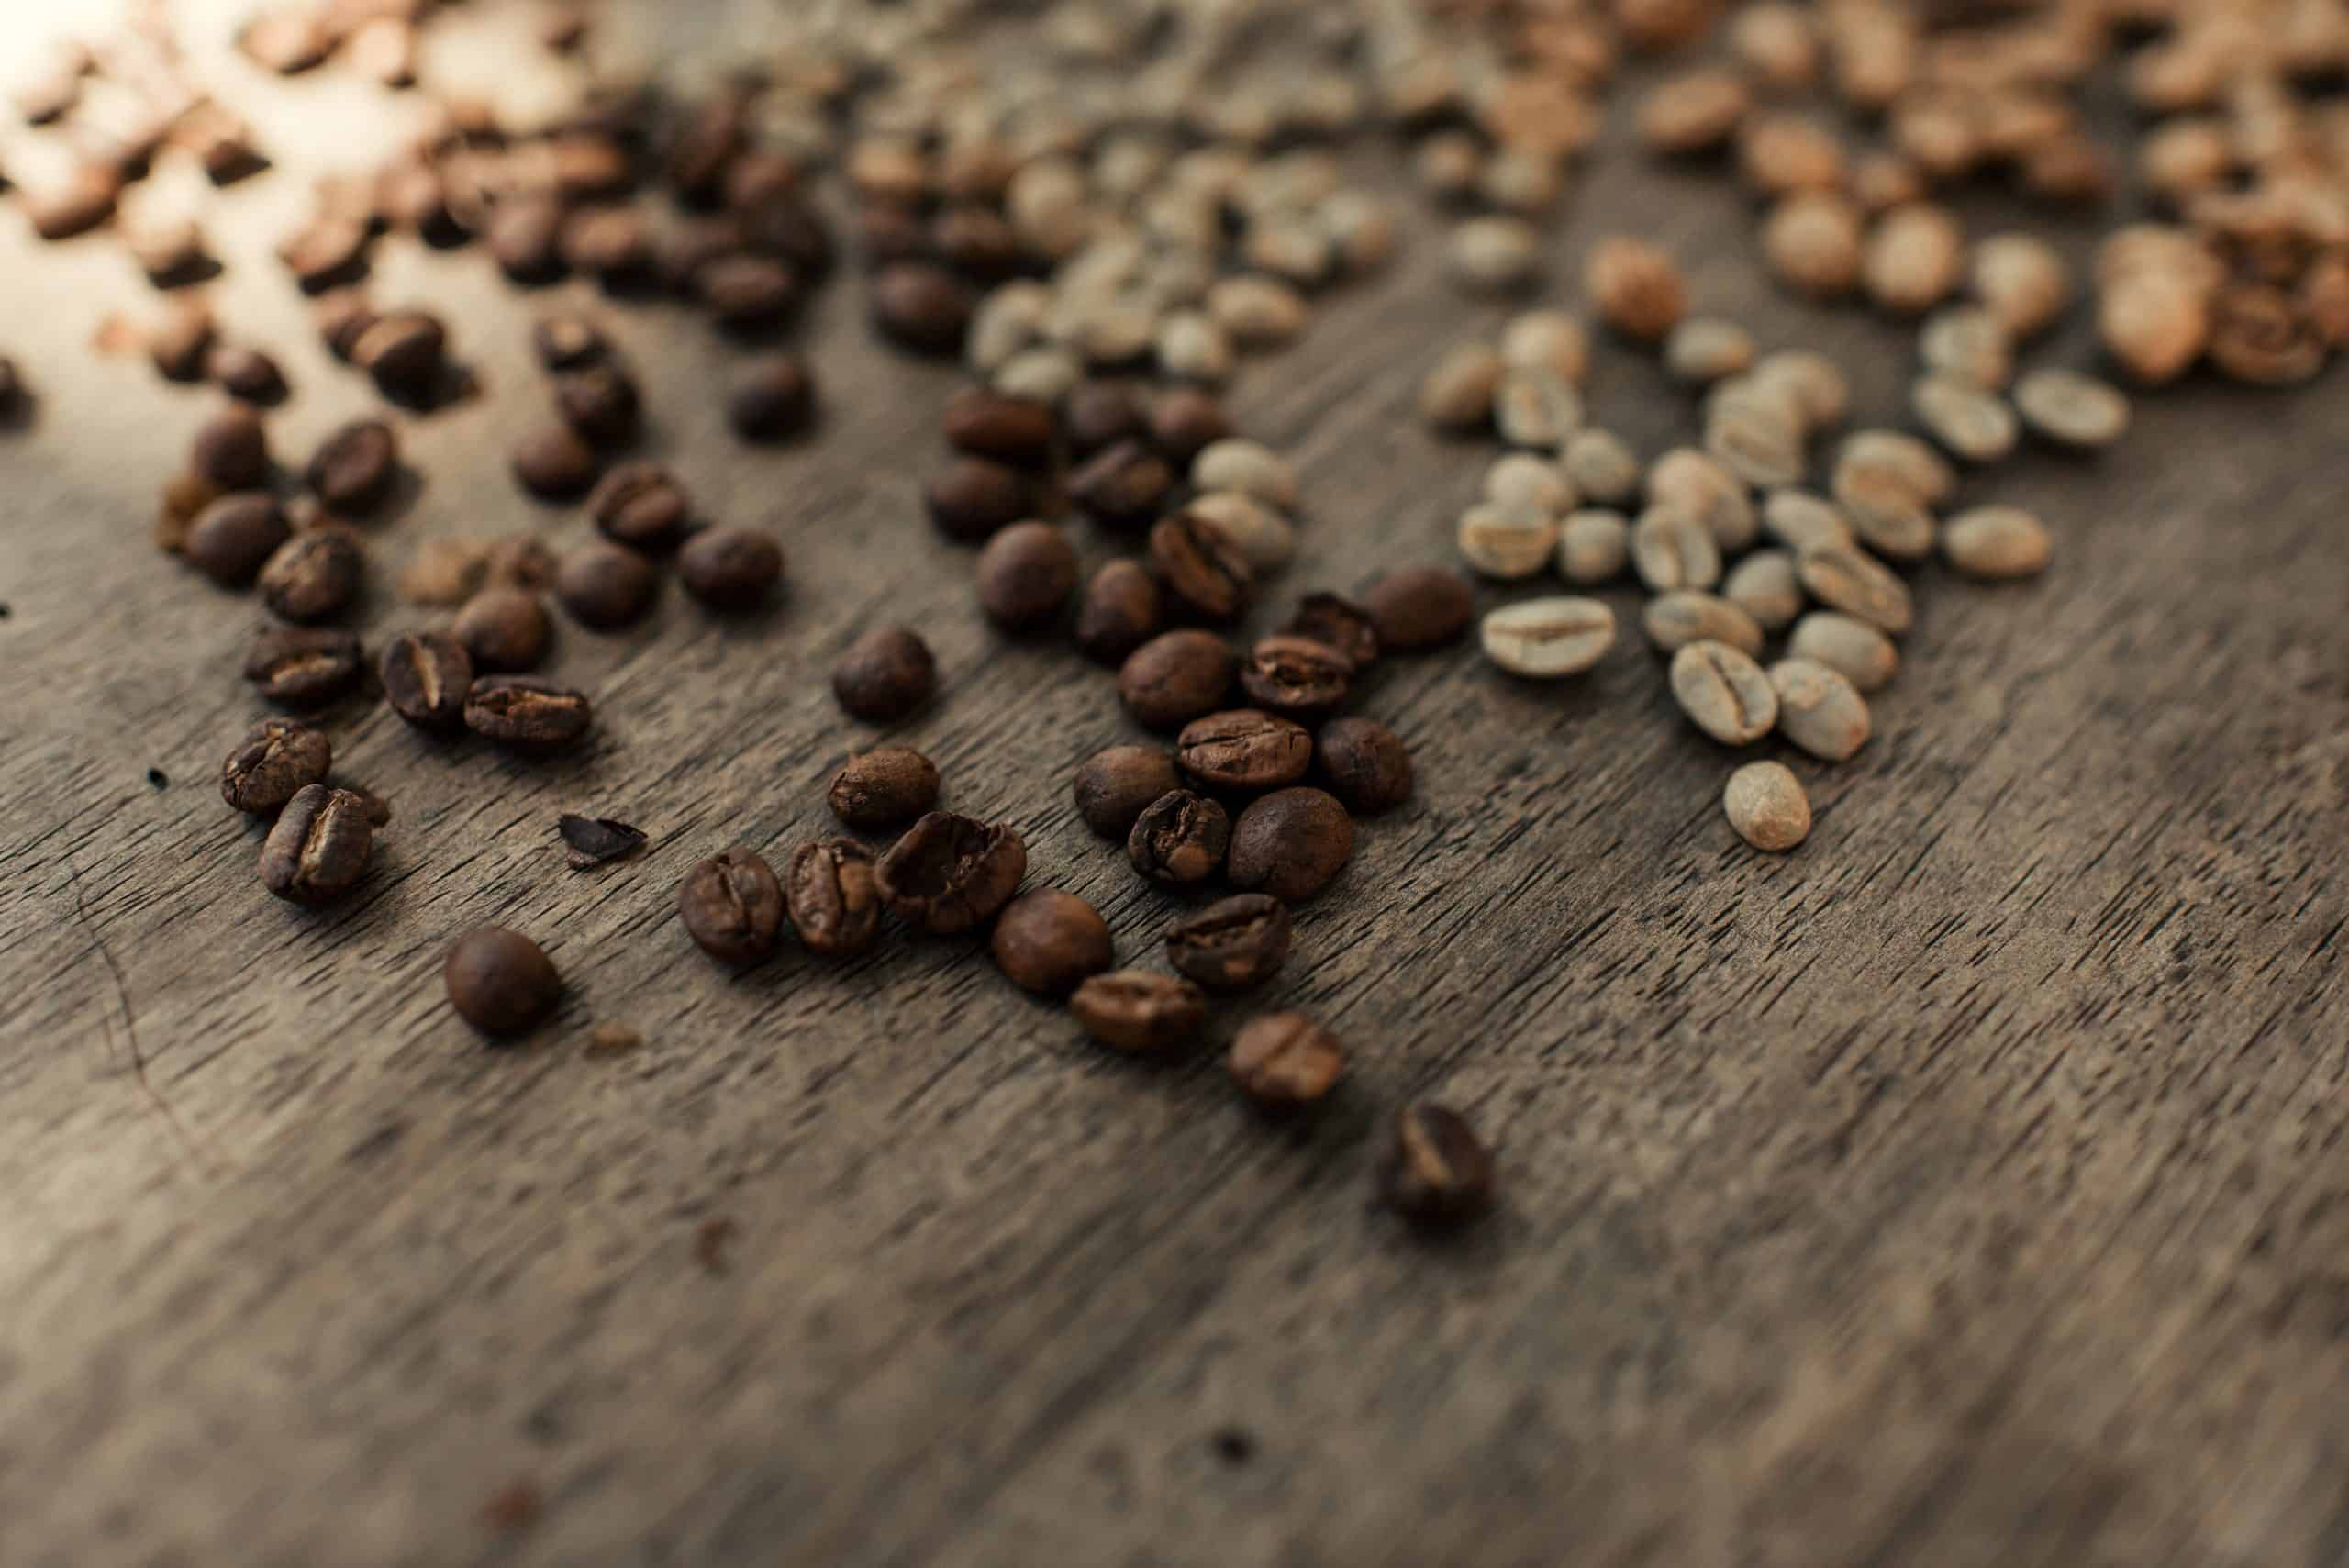 Blenz Café - Entre os principais tipos de cafés produzidos no